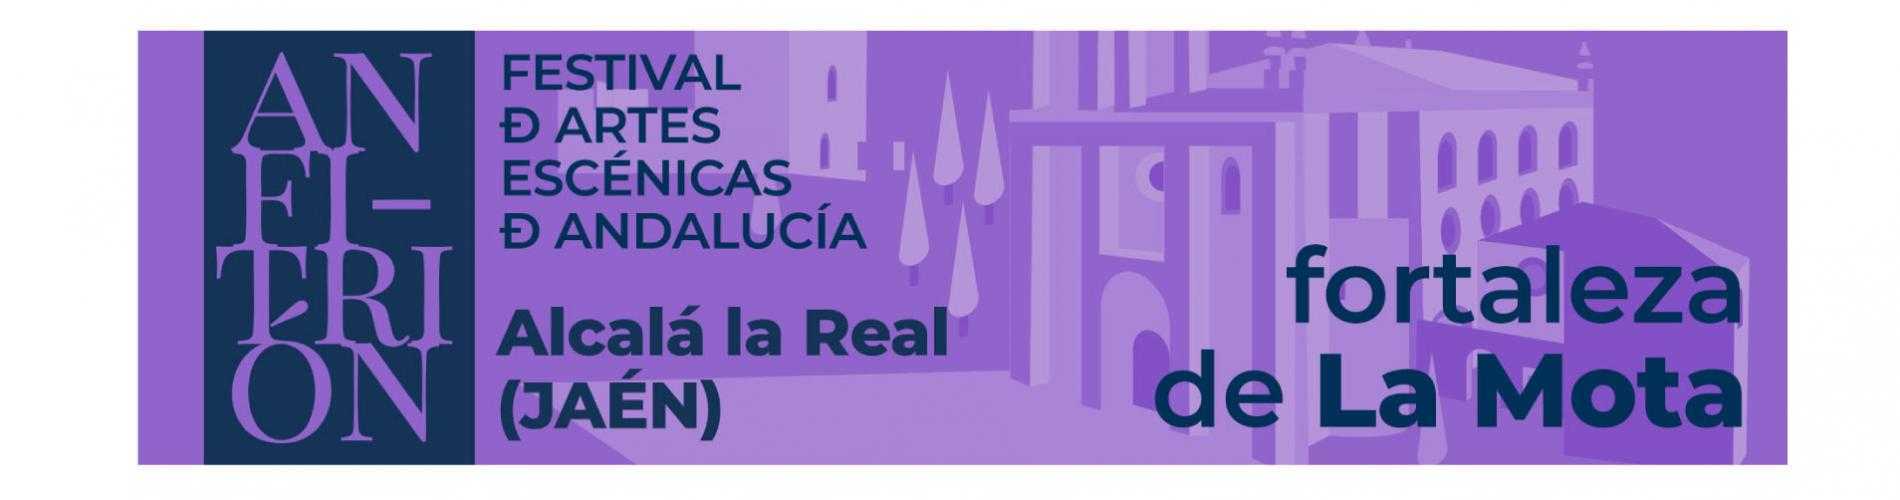 Anfitrión - Festival de Artes Escénicas en la Fortaleza de La Mota - Alcalá  la Real